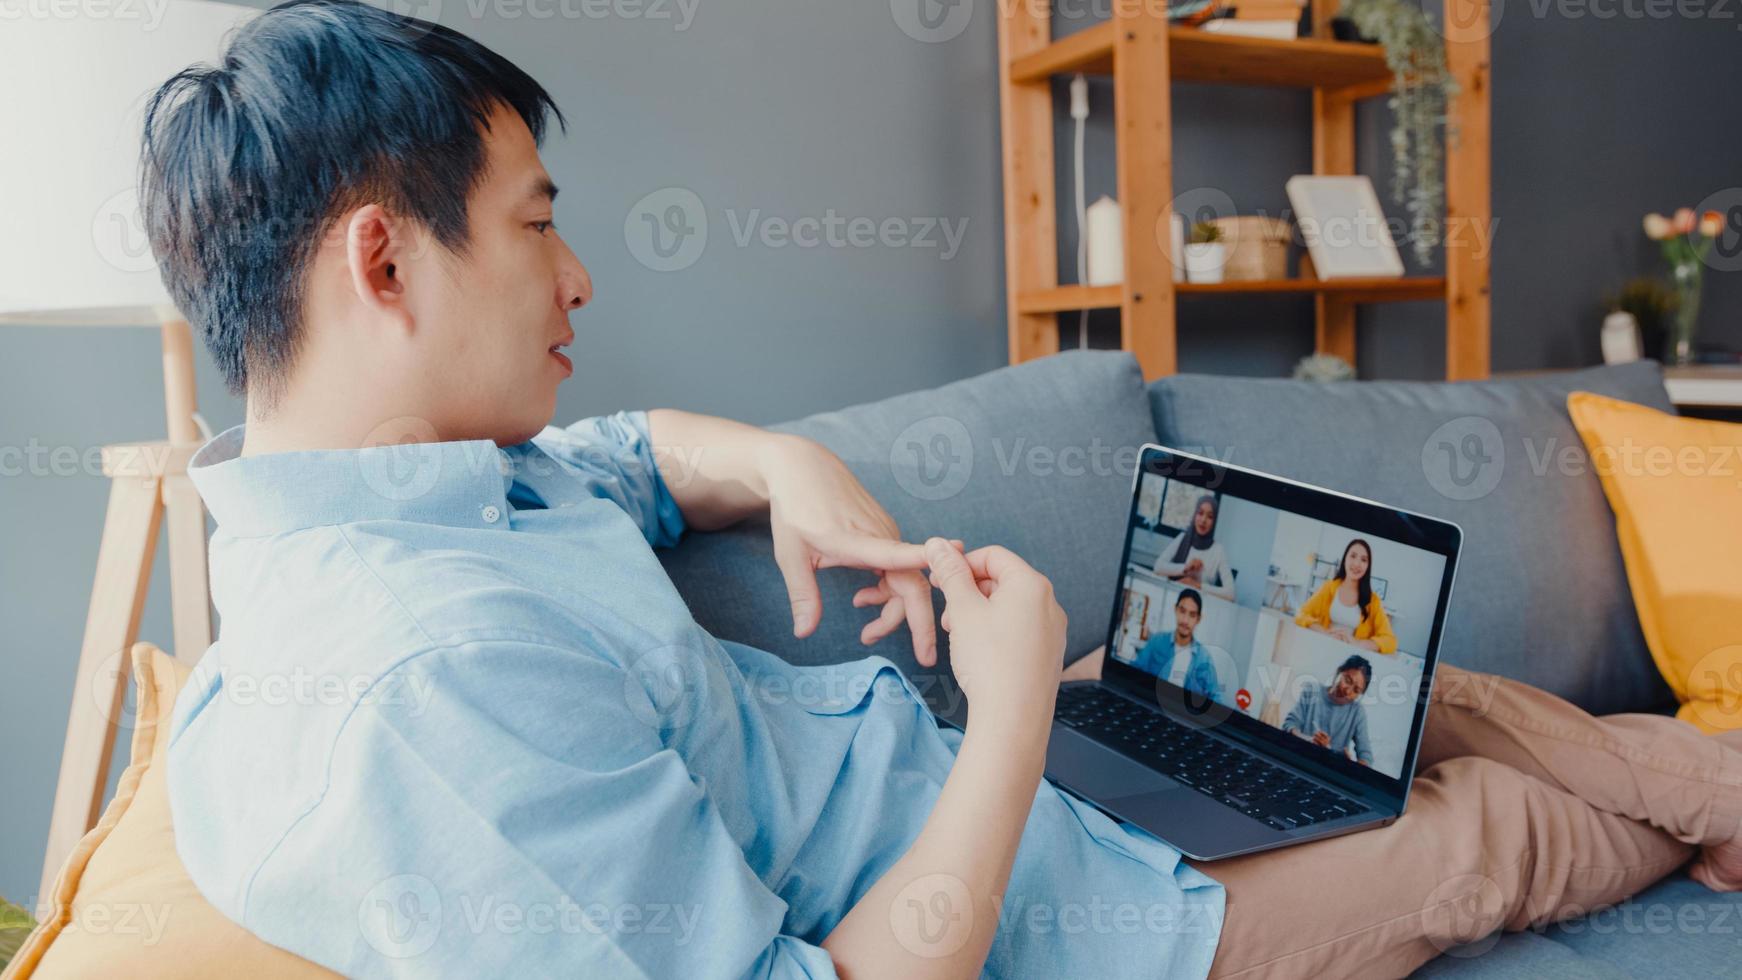 jonge Aziatische zakenman die laptop gebruikt, praat met collega's over het plan in een videogesprekvergadering terwijl hij vanuit huis in de woonkamer werkt. zelfisolatie, sociale afstand, quarantaine voor preventie van het coronavirus. foto